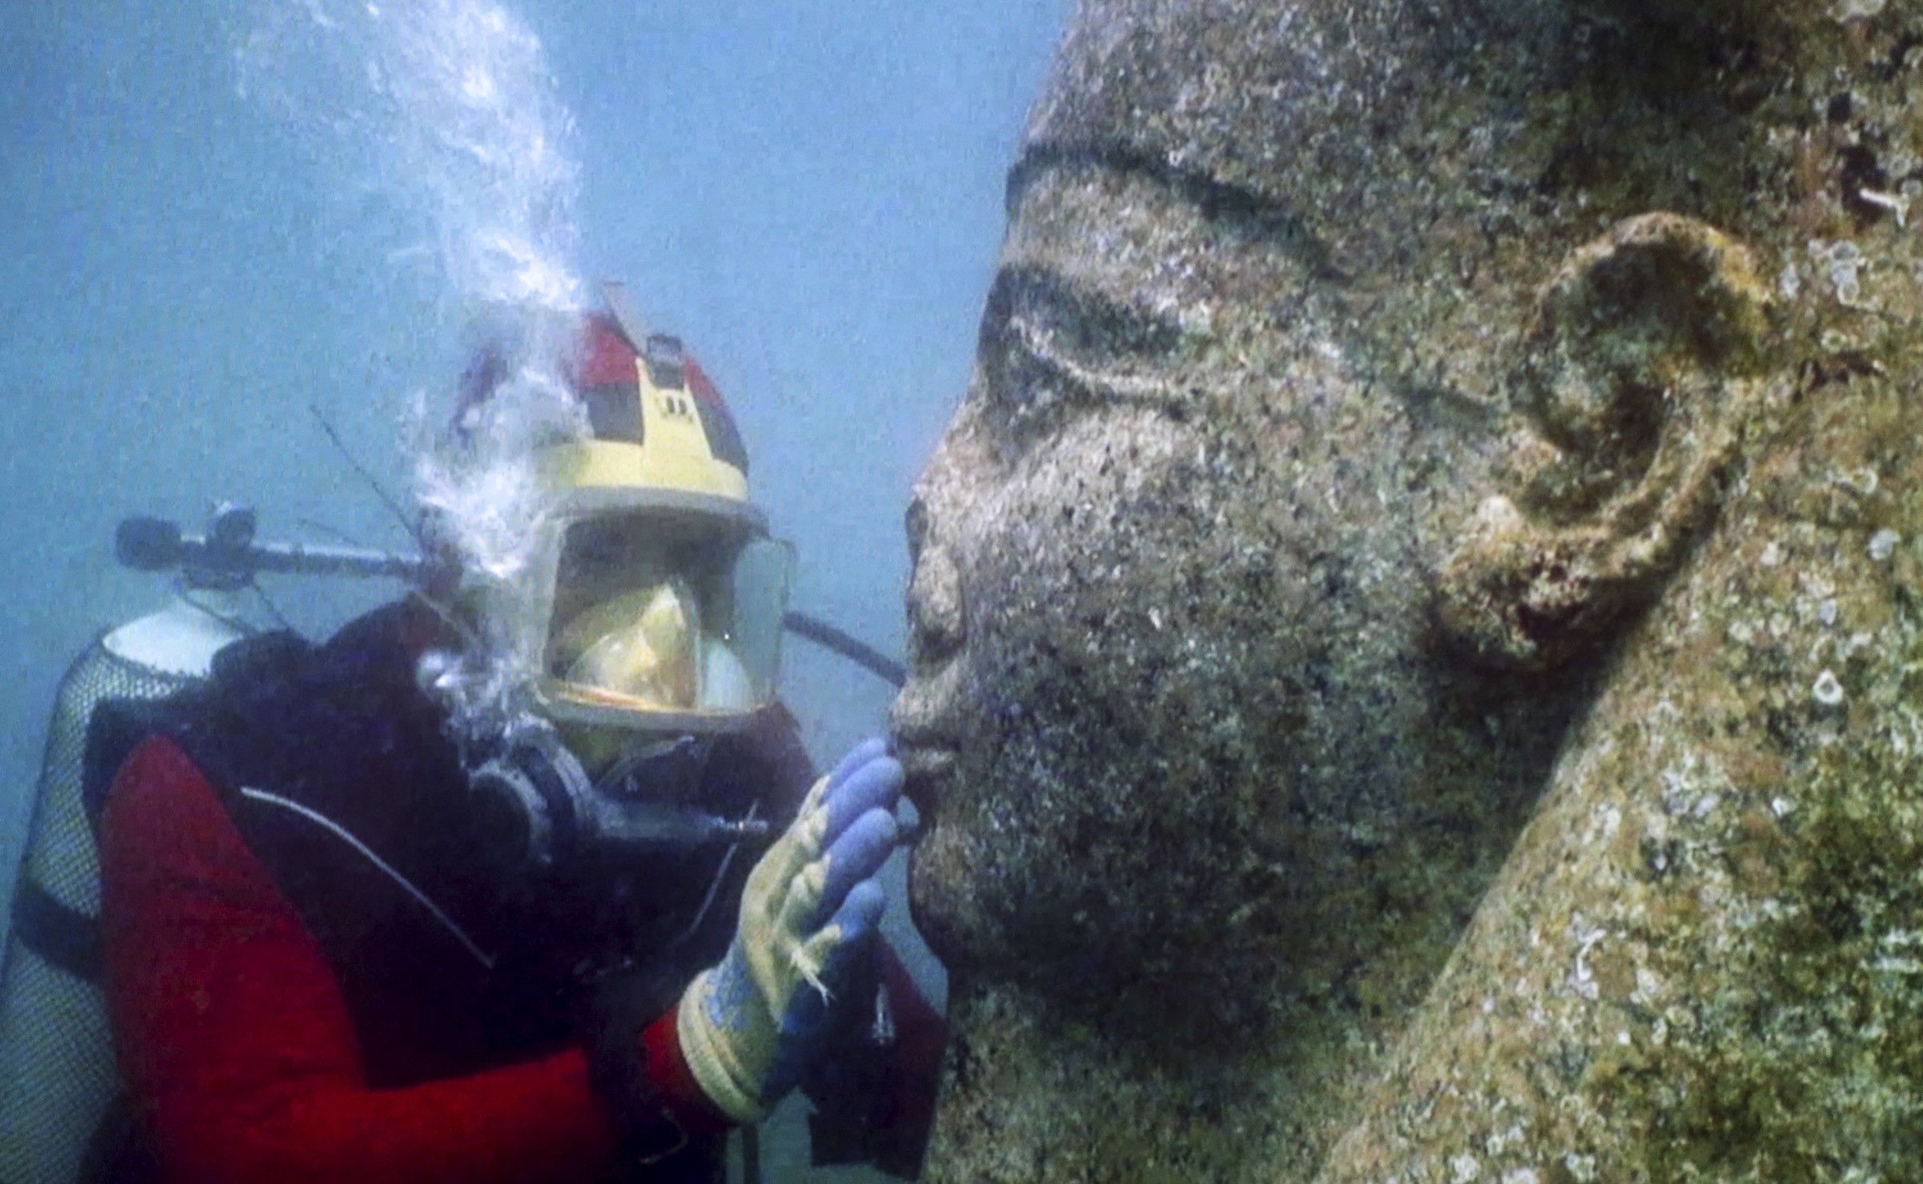 Tesoros de ciudades submarinas resucitan "Mito de Osiris"